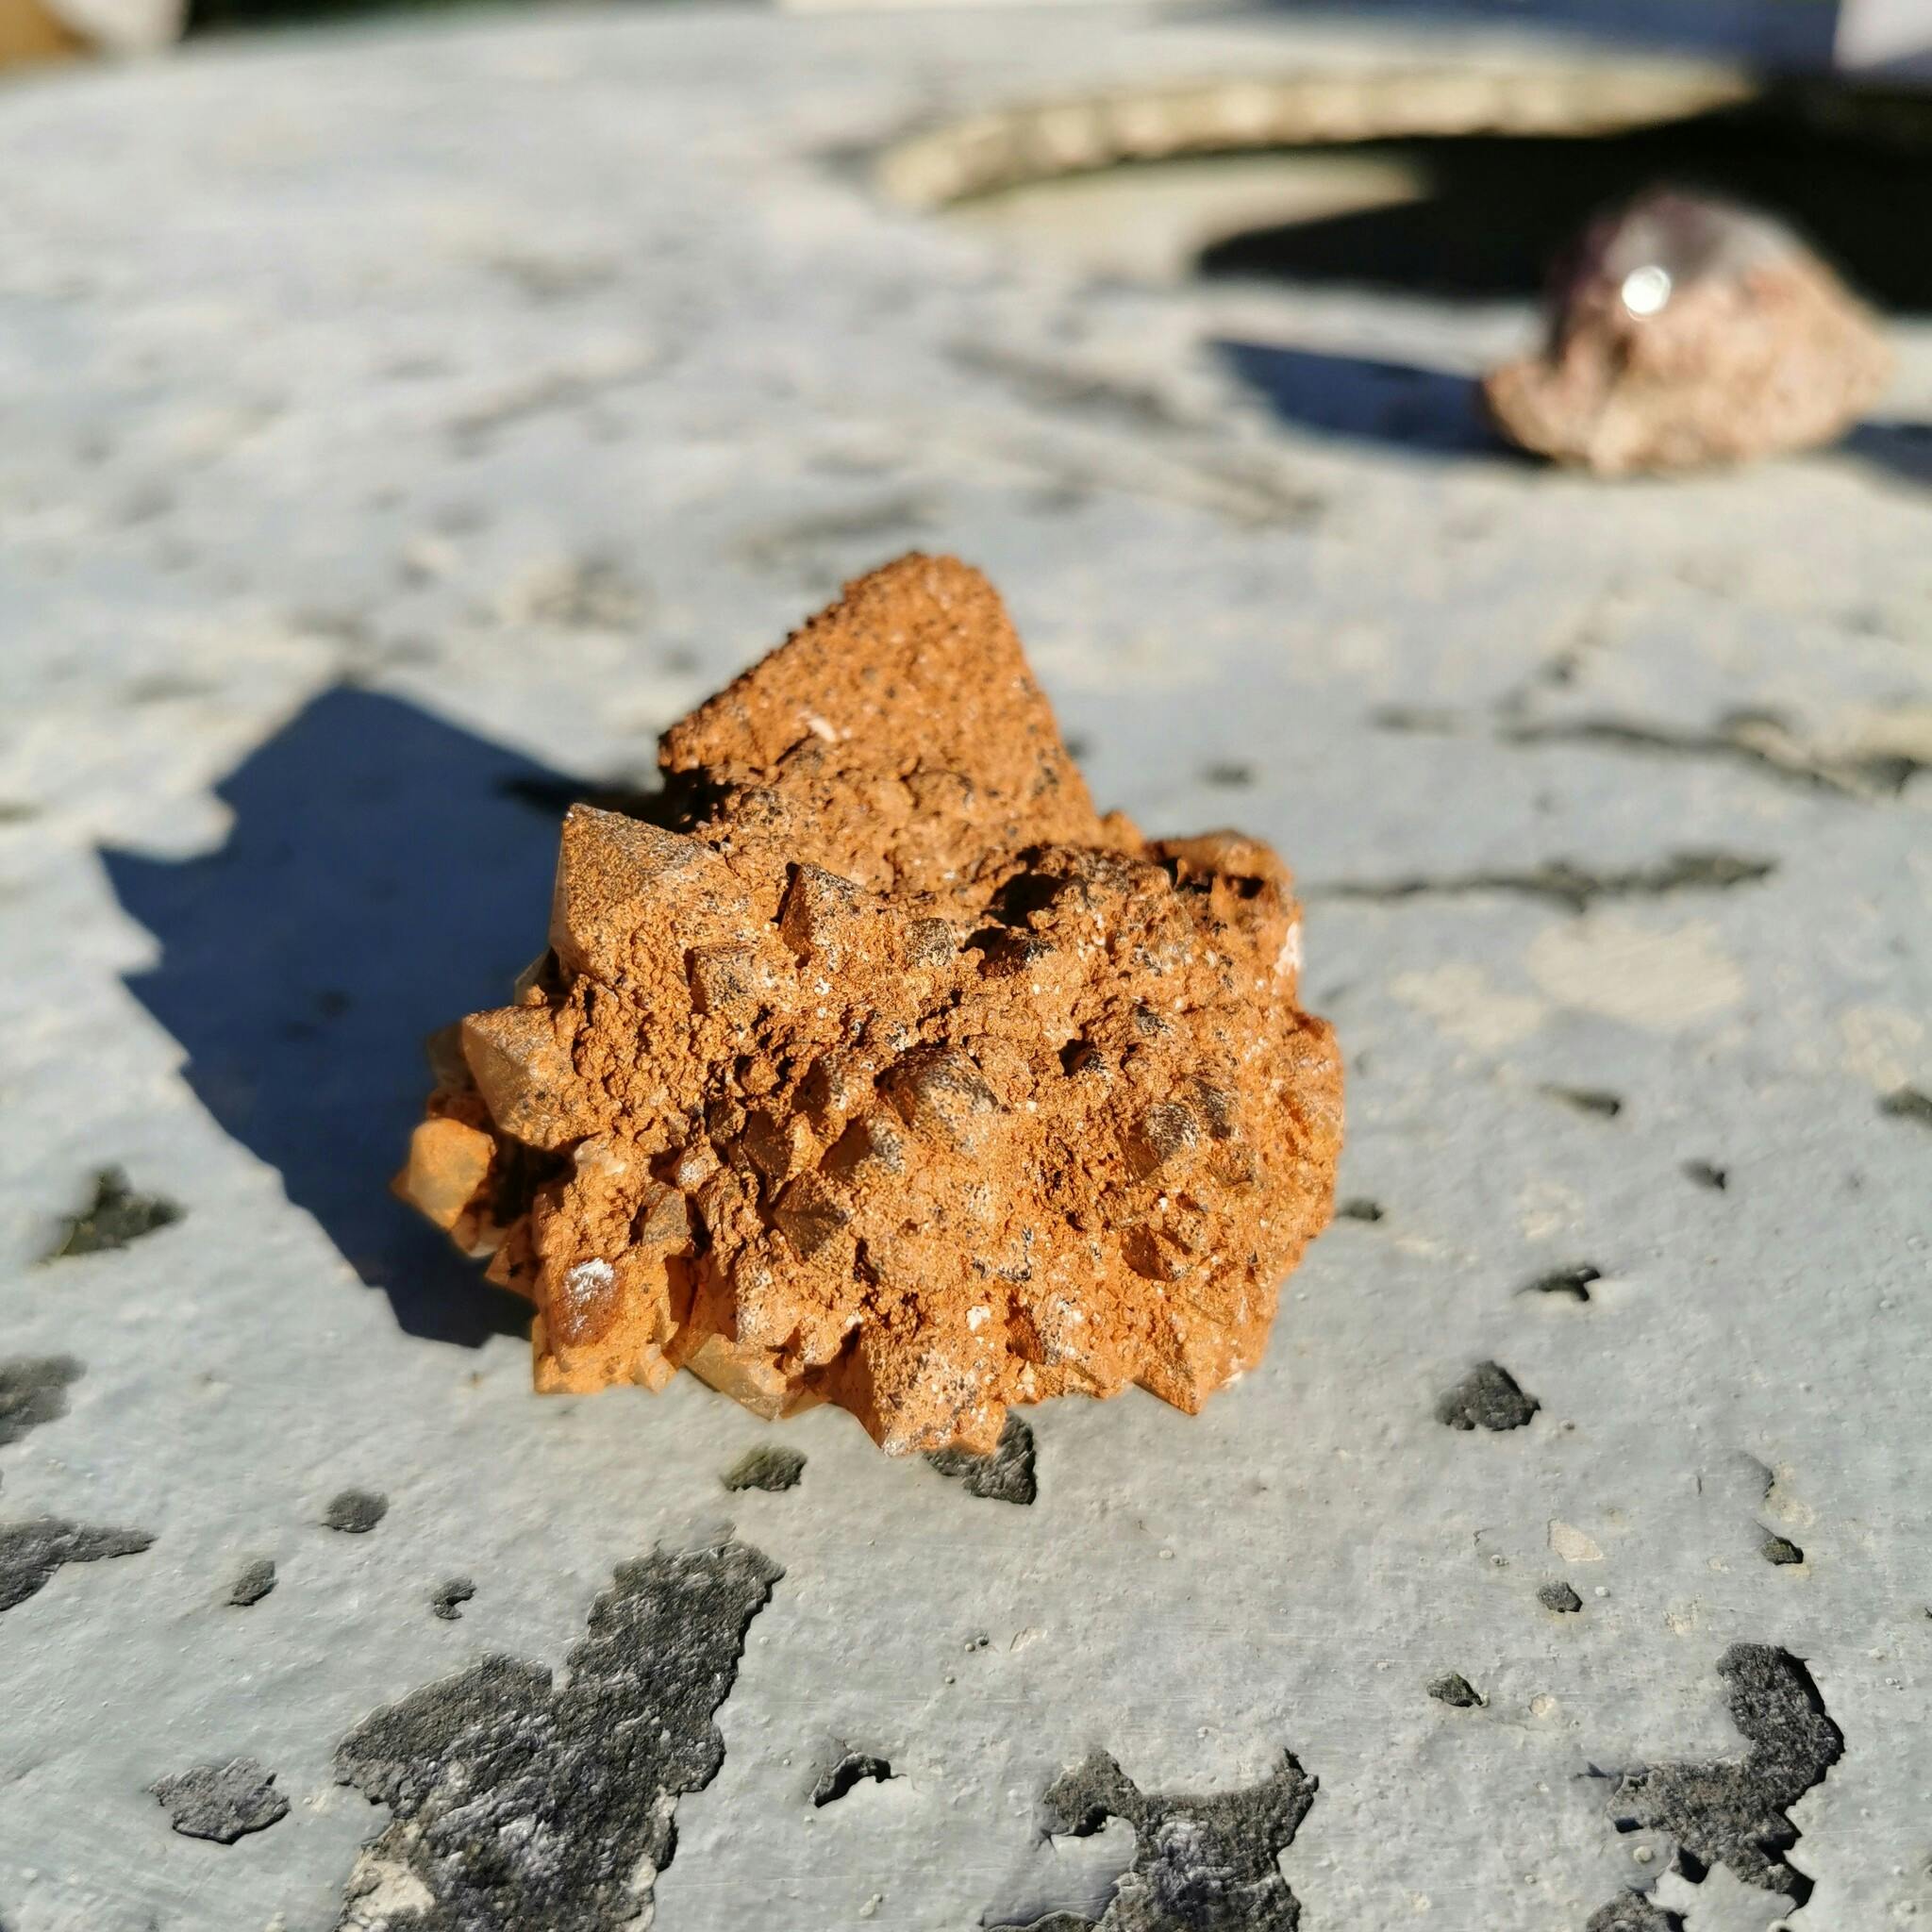 Unikt bergkristall kluster med flourit kub, täckta med sandliknande material